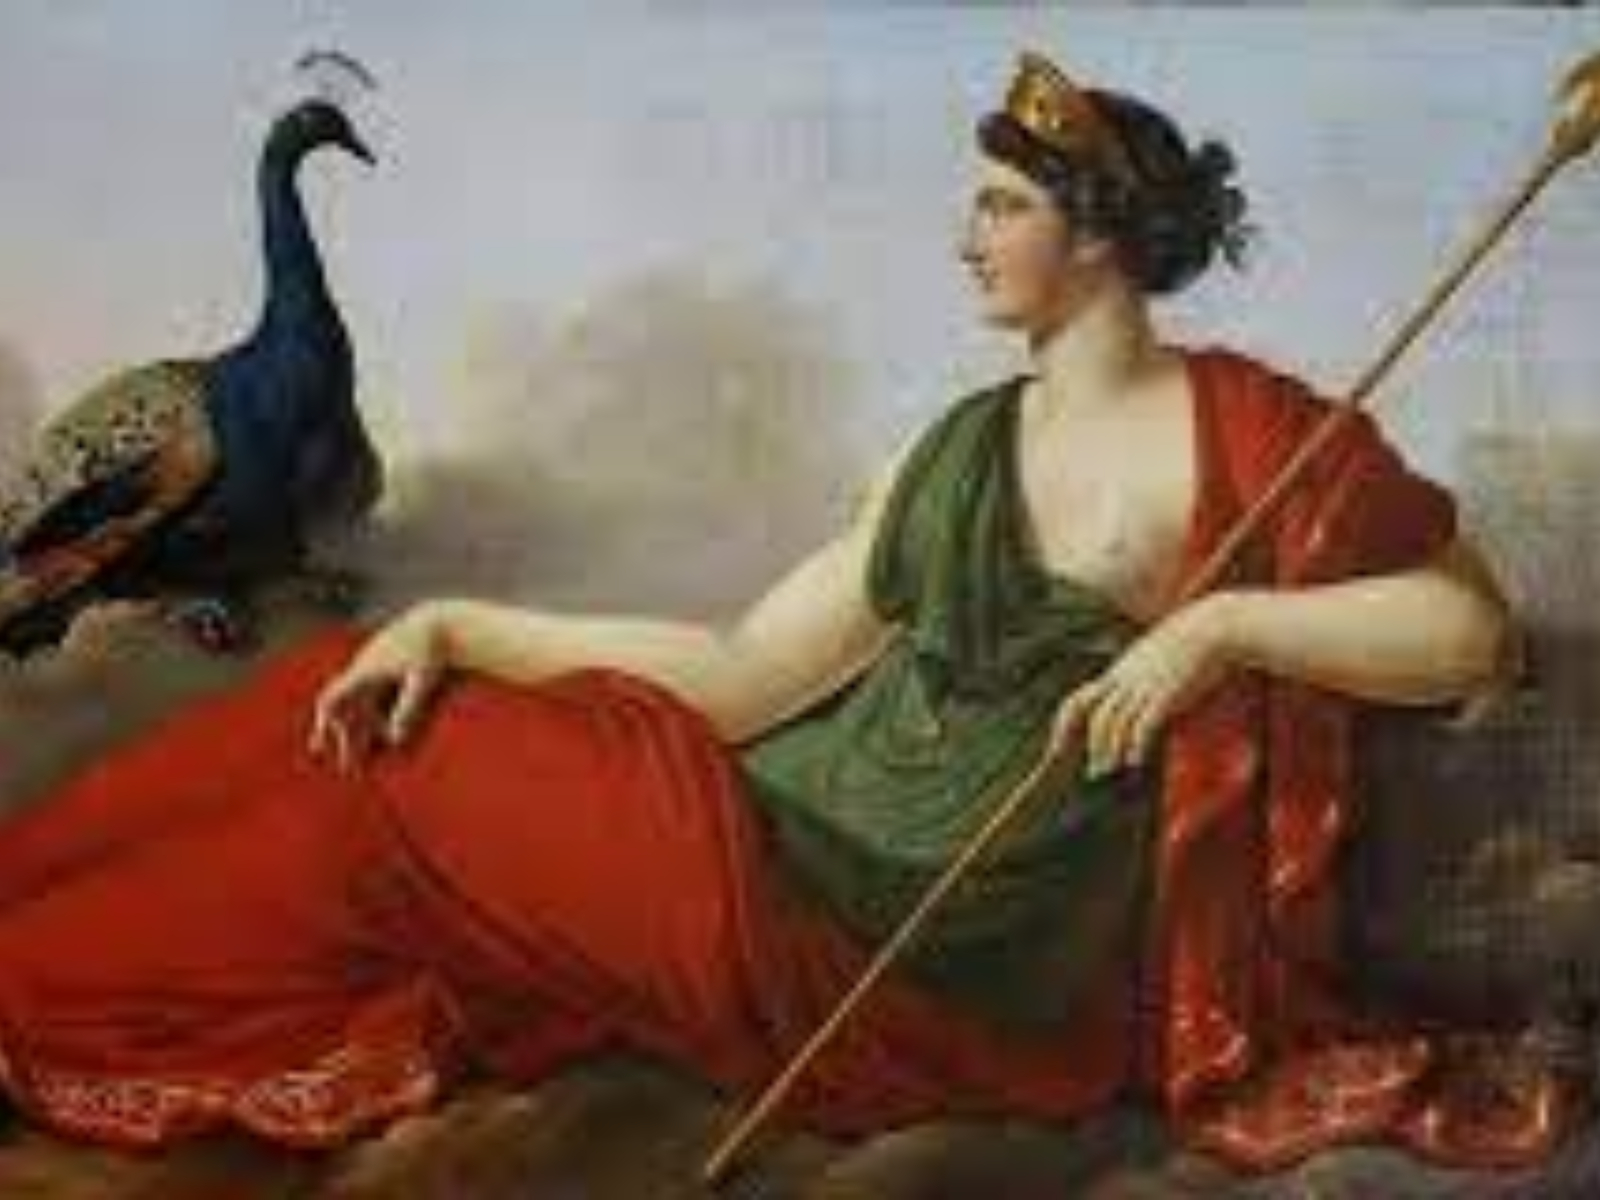 Ζώδια-Αρχαία Ελληνική μυθολογία: Δείτε σε ποιον αρχαίο Έλληνα θεό αντιστοιχεί το ζώδιό σας